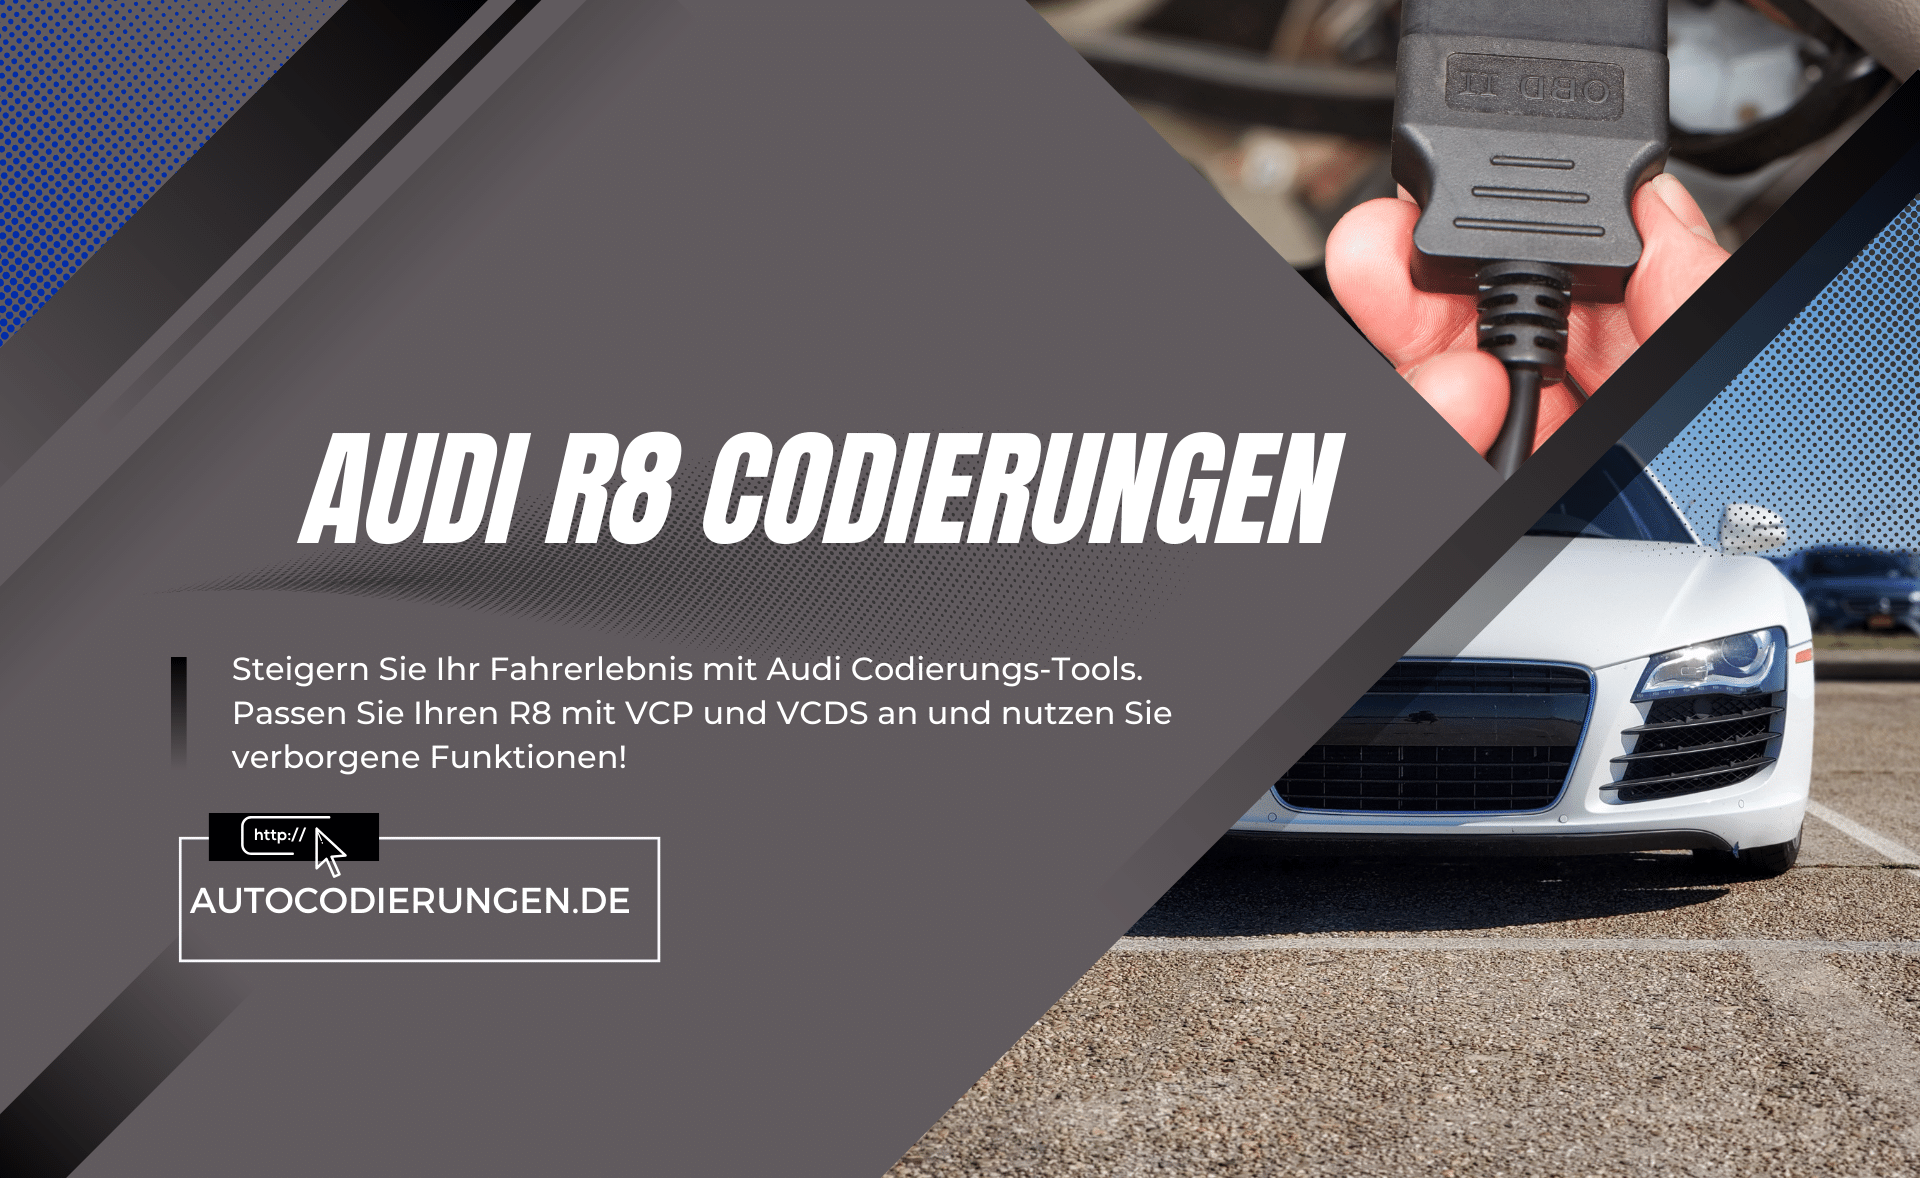 Audi R8 Codierungen